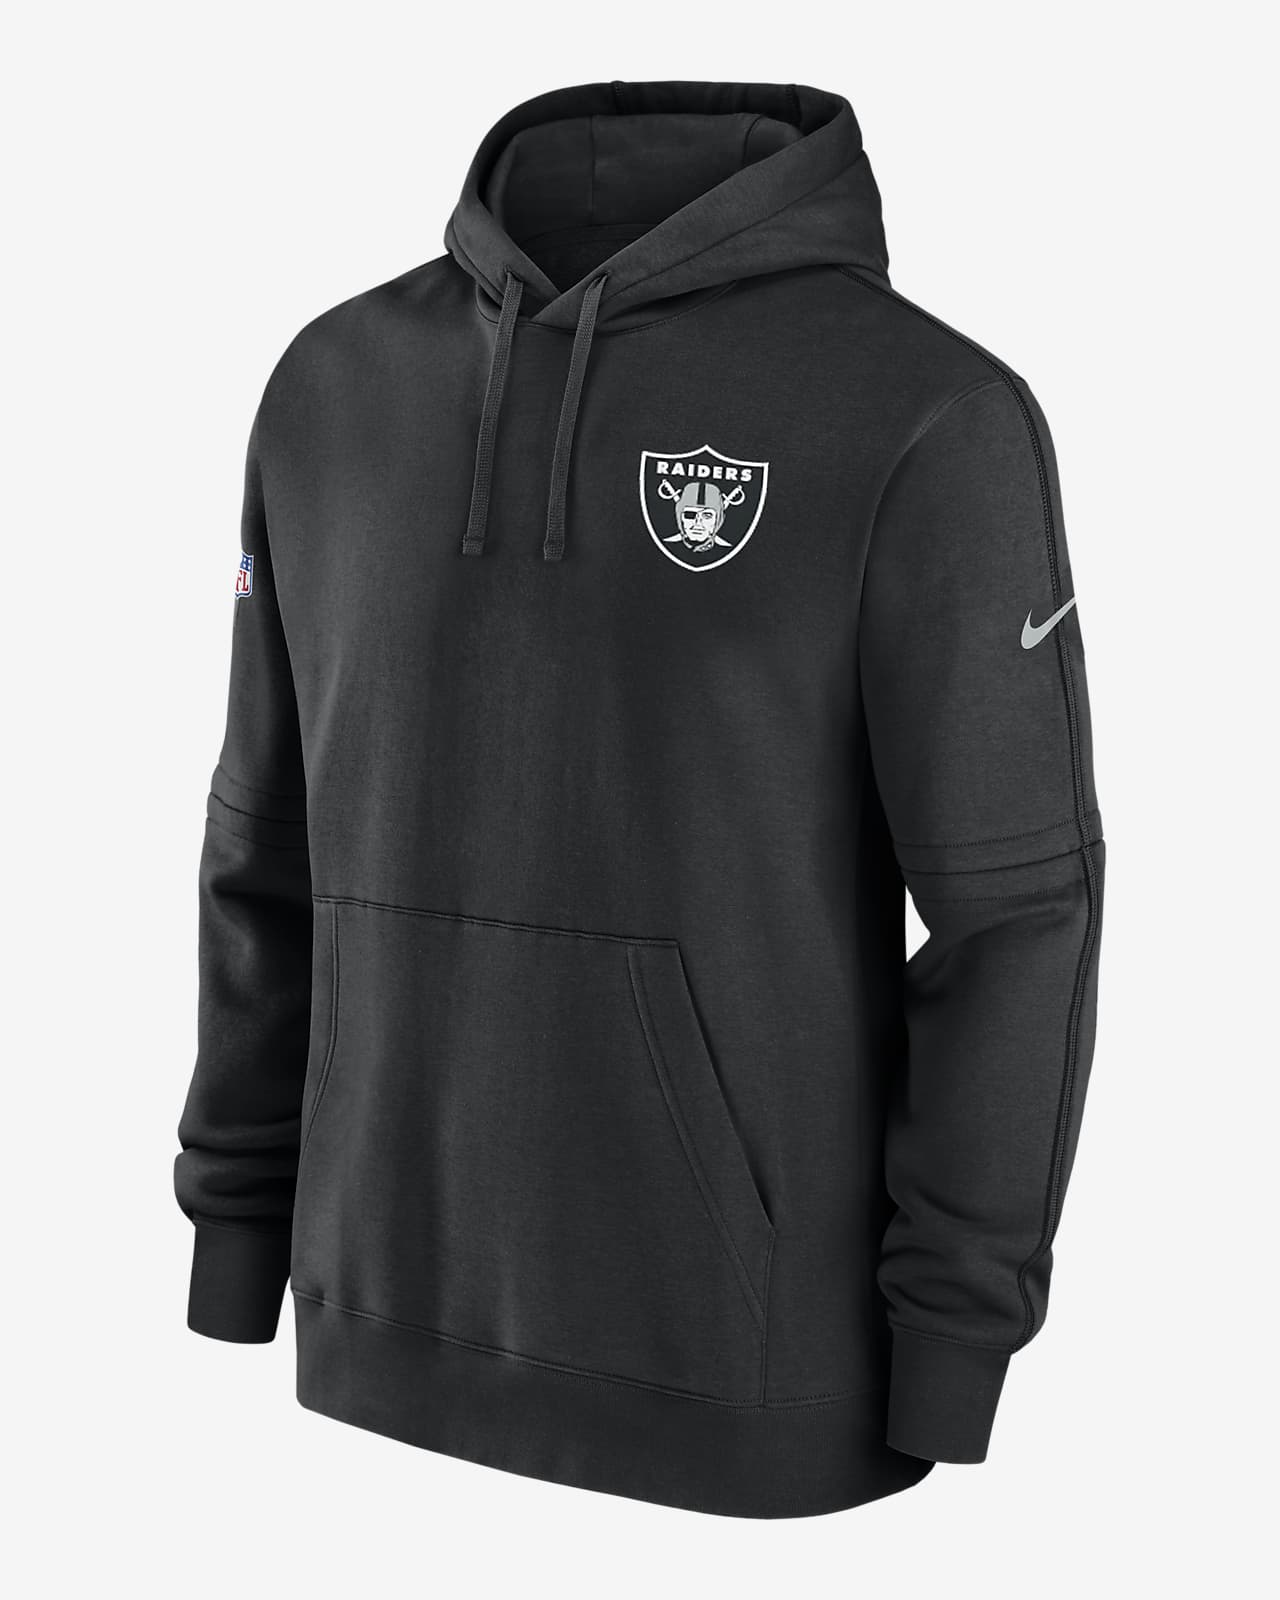 Las Vegas Raiders Sideline Club Sudadera con capucha Nike NFL - Hombre